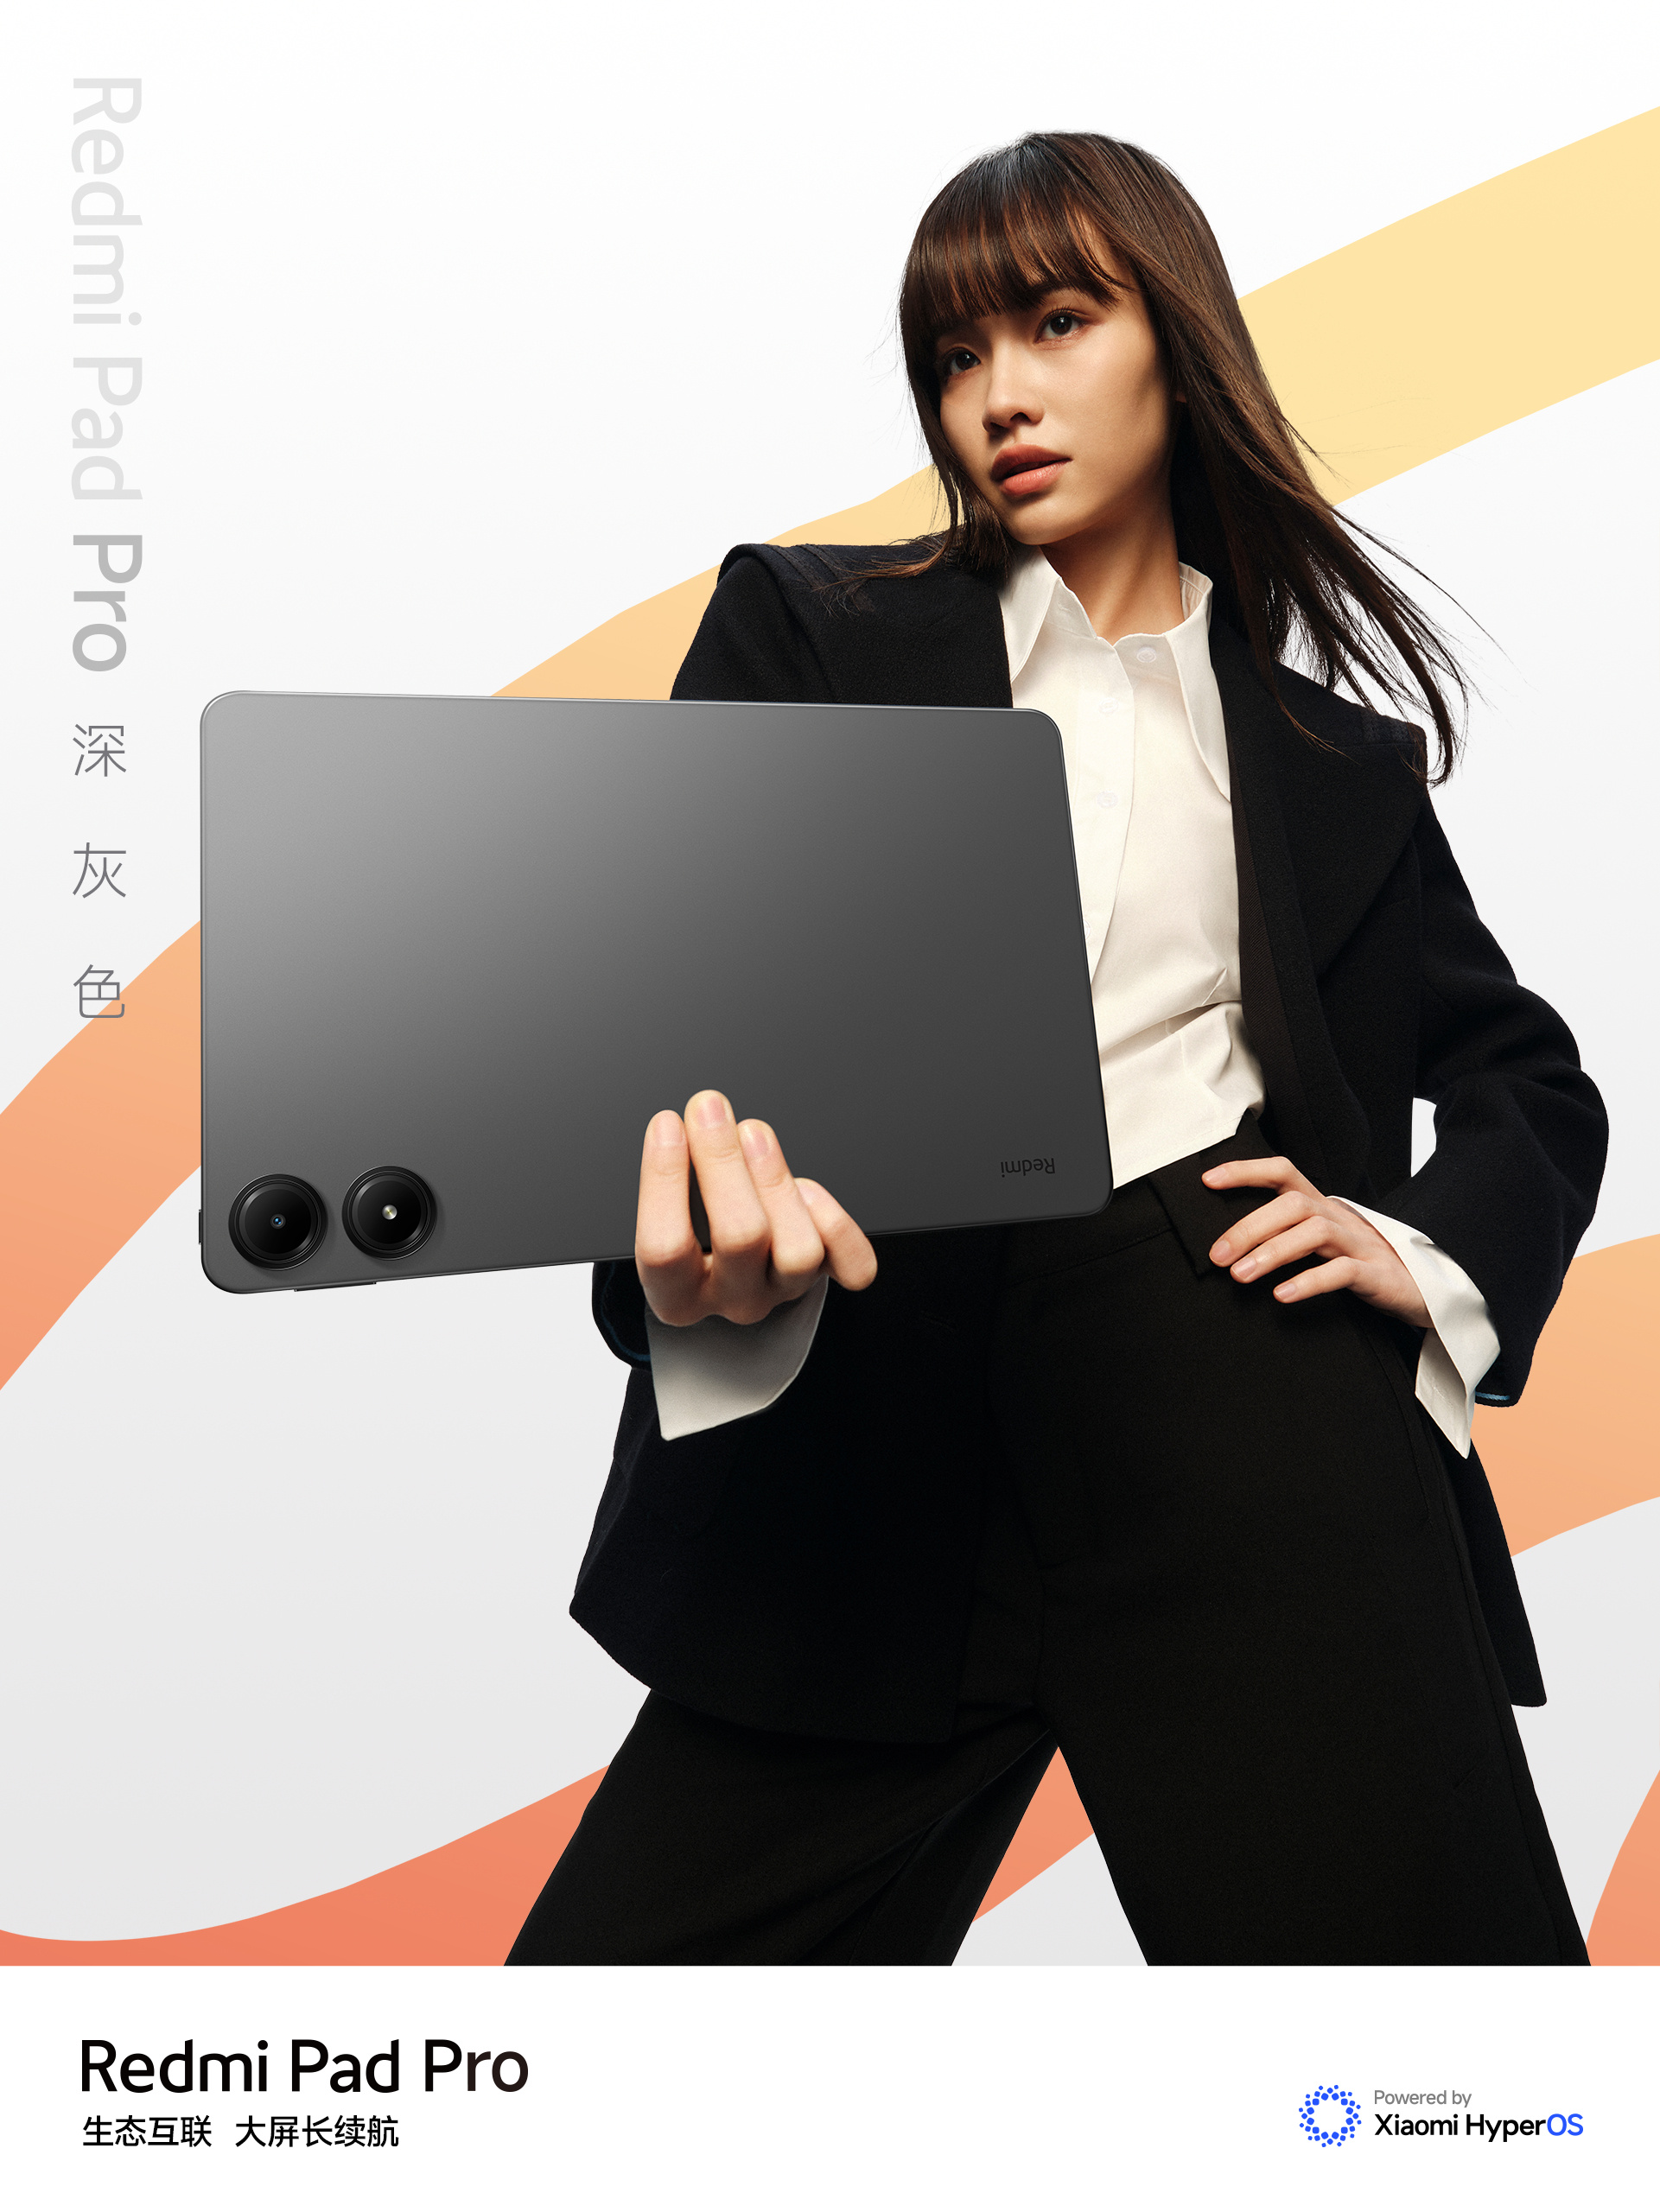 Xiaomi ra mắt máy tính bảng đẹp như iPad, chip Snapdragon 7s Gen 2 mạnh mẽ, pin 10.000mAh, giá chỉ hơn 5 triệu đồng - Ảnh 1.